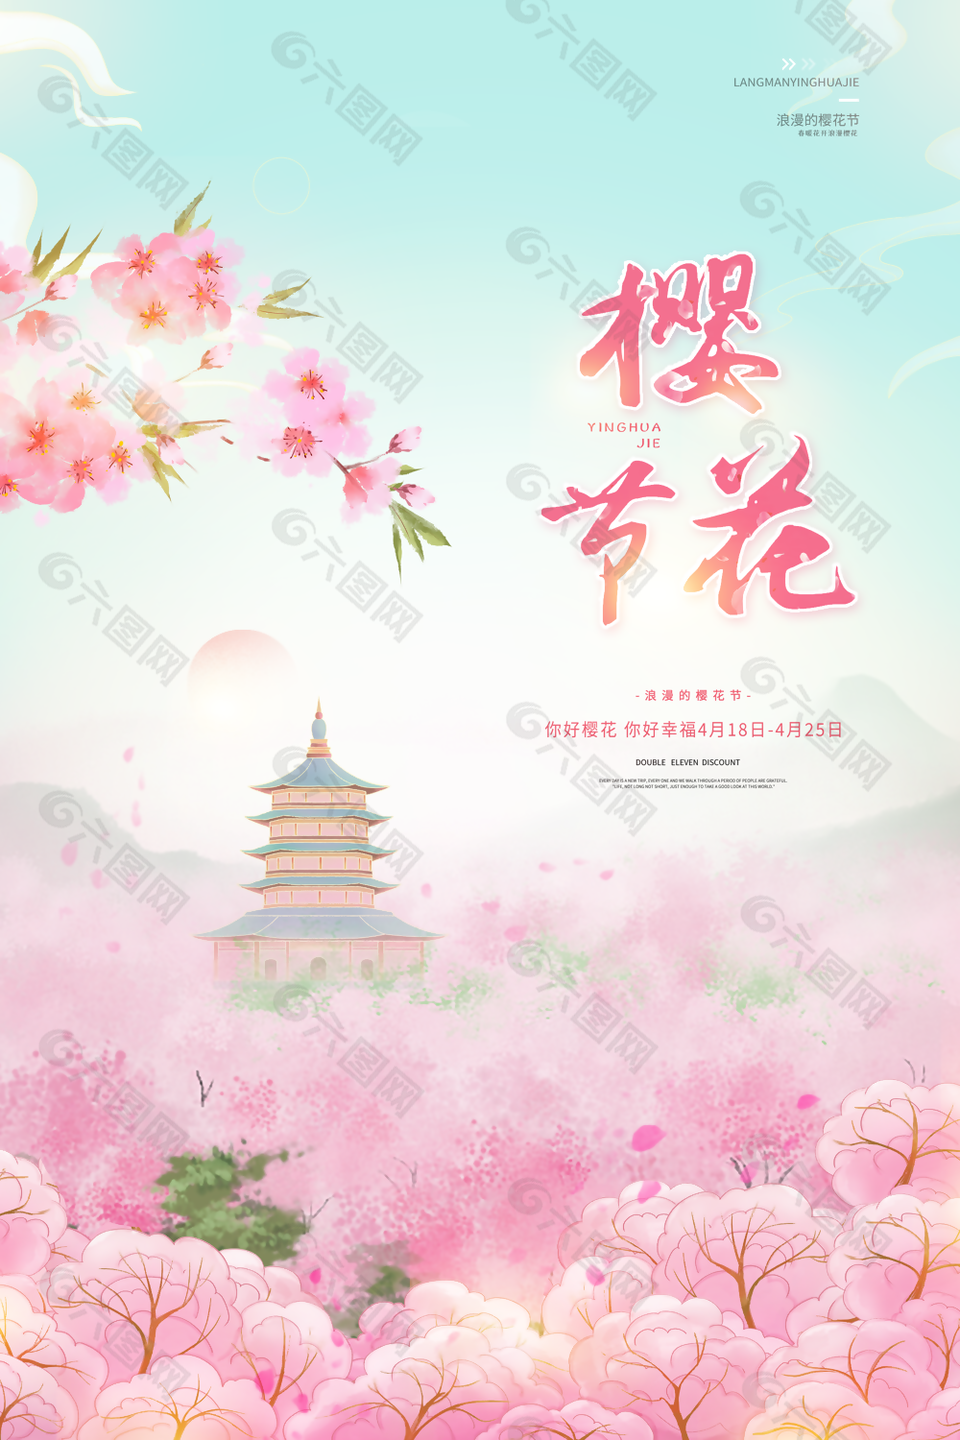 唯美粉色清新手绘浪漫樱花节海报